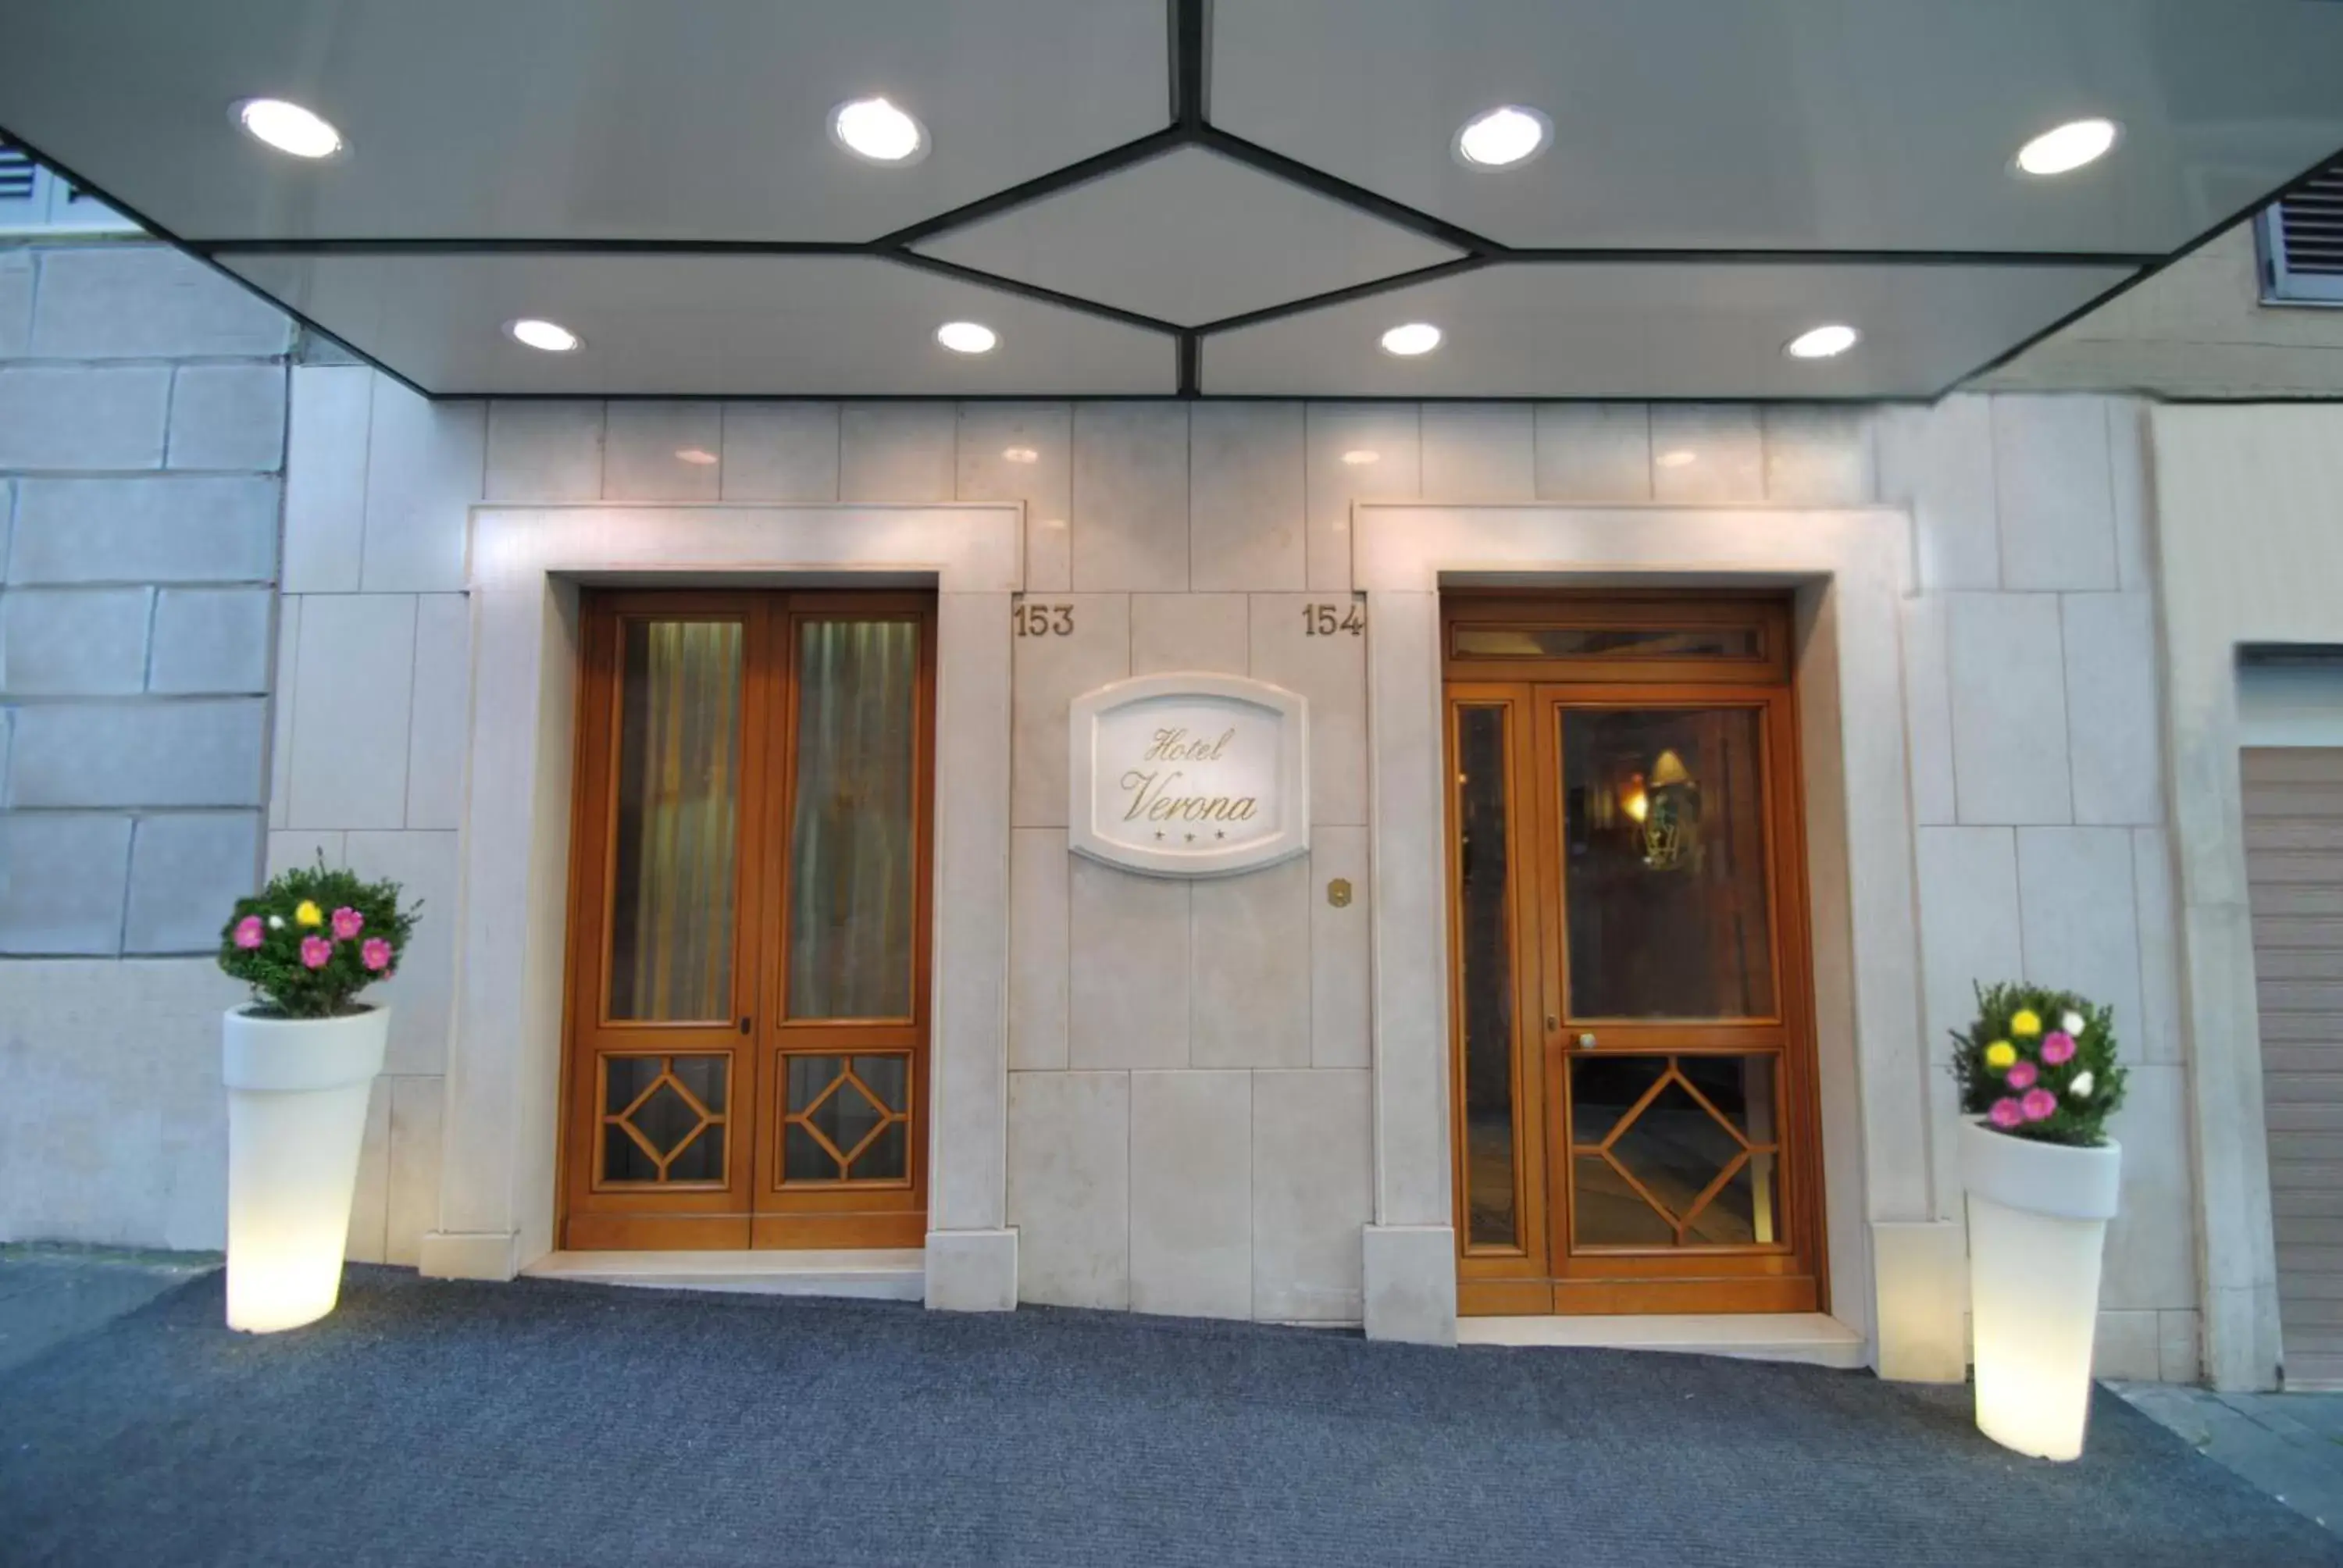 Facade/entrance in Hotel Verona Rome